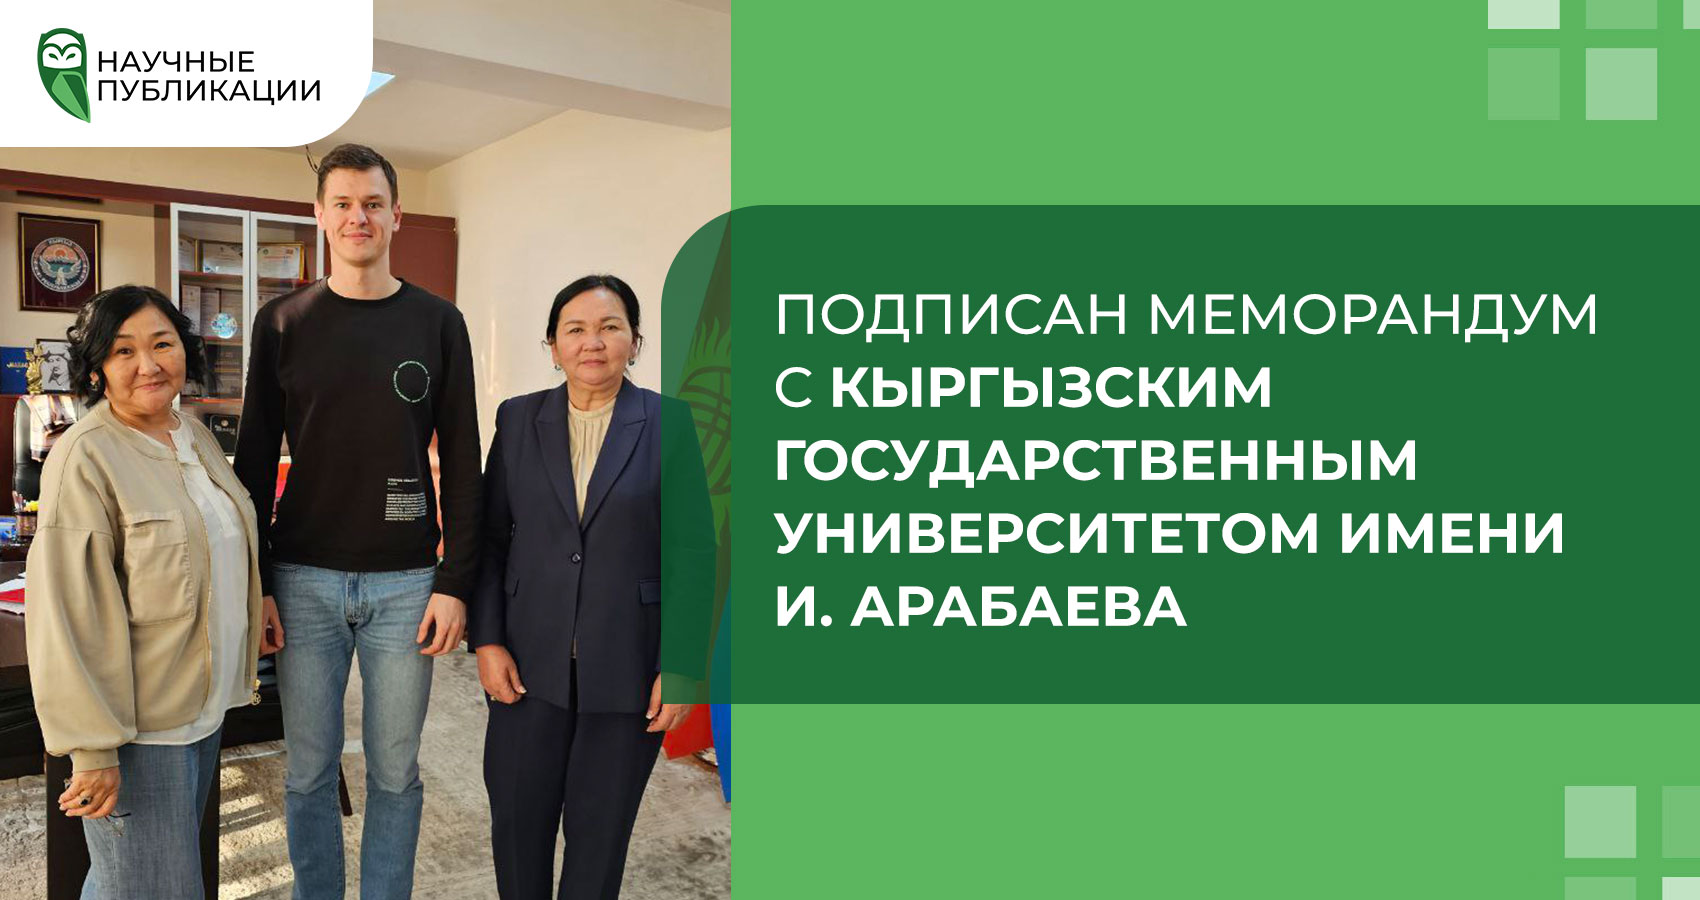 Подписан меморандум с Кыргызским государственным университетом имени И. Арабаева